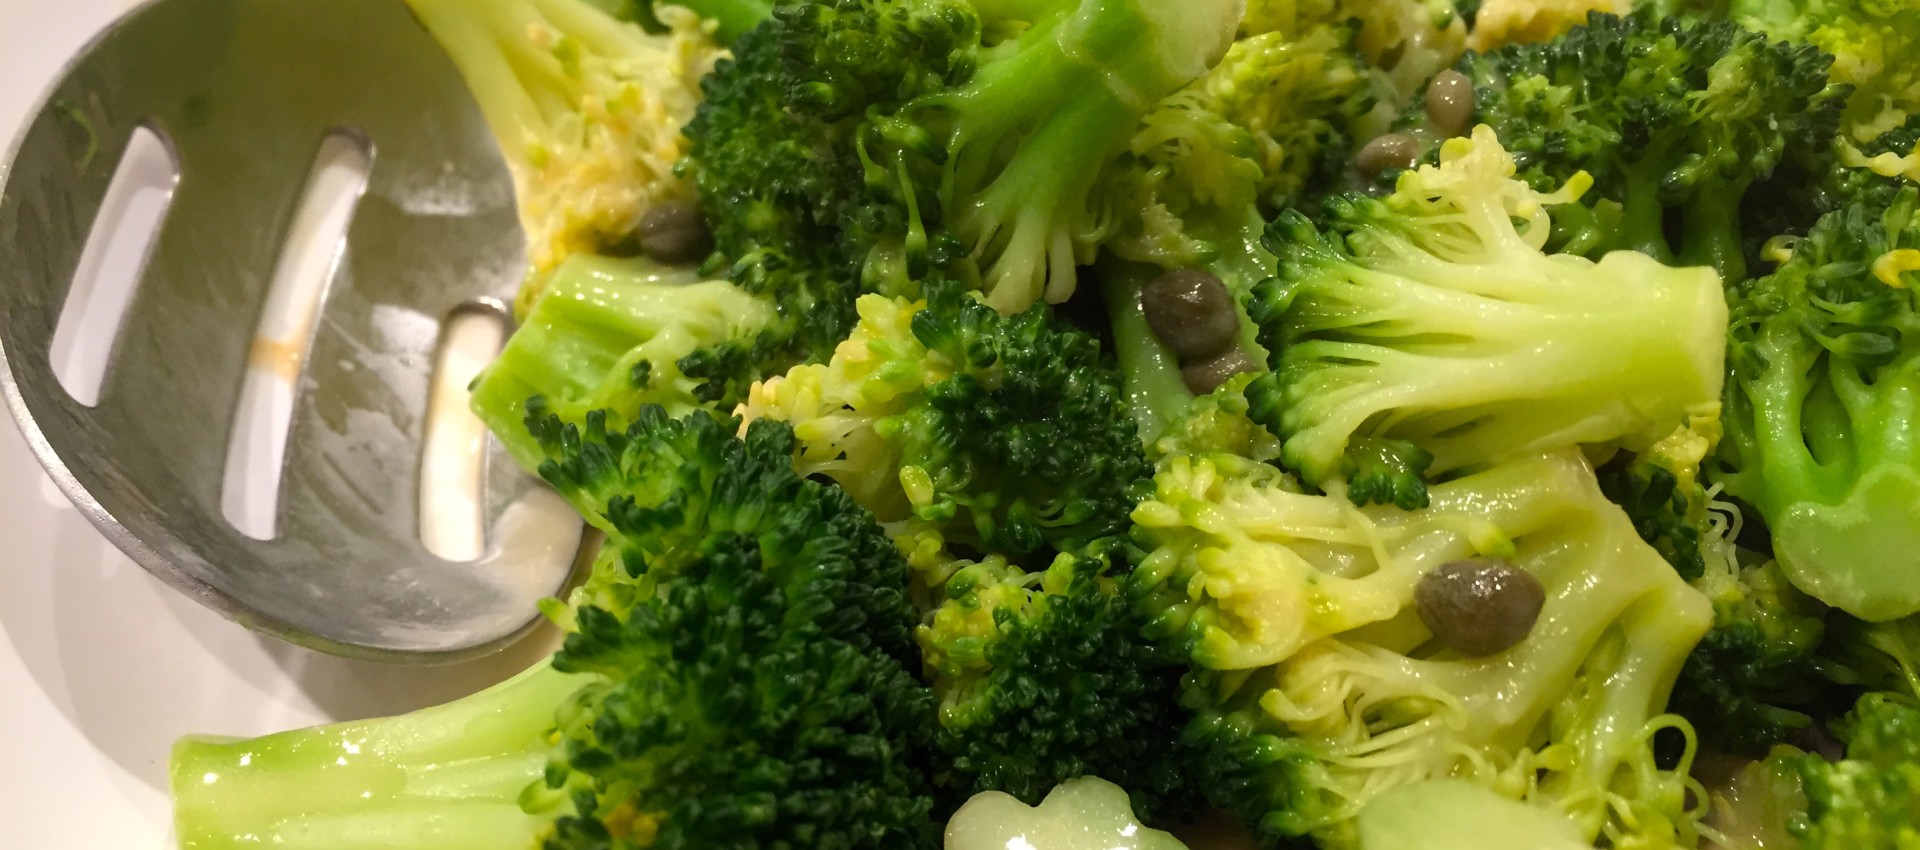 Mustard-Caper Sauce for Broccoli